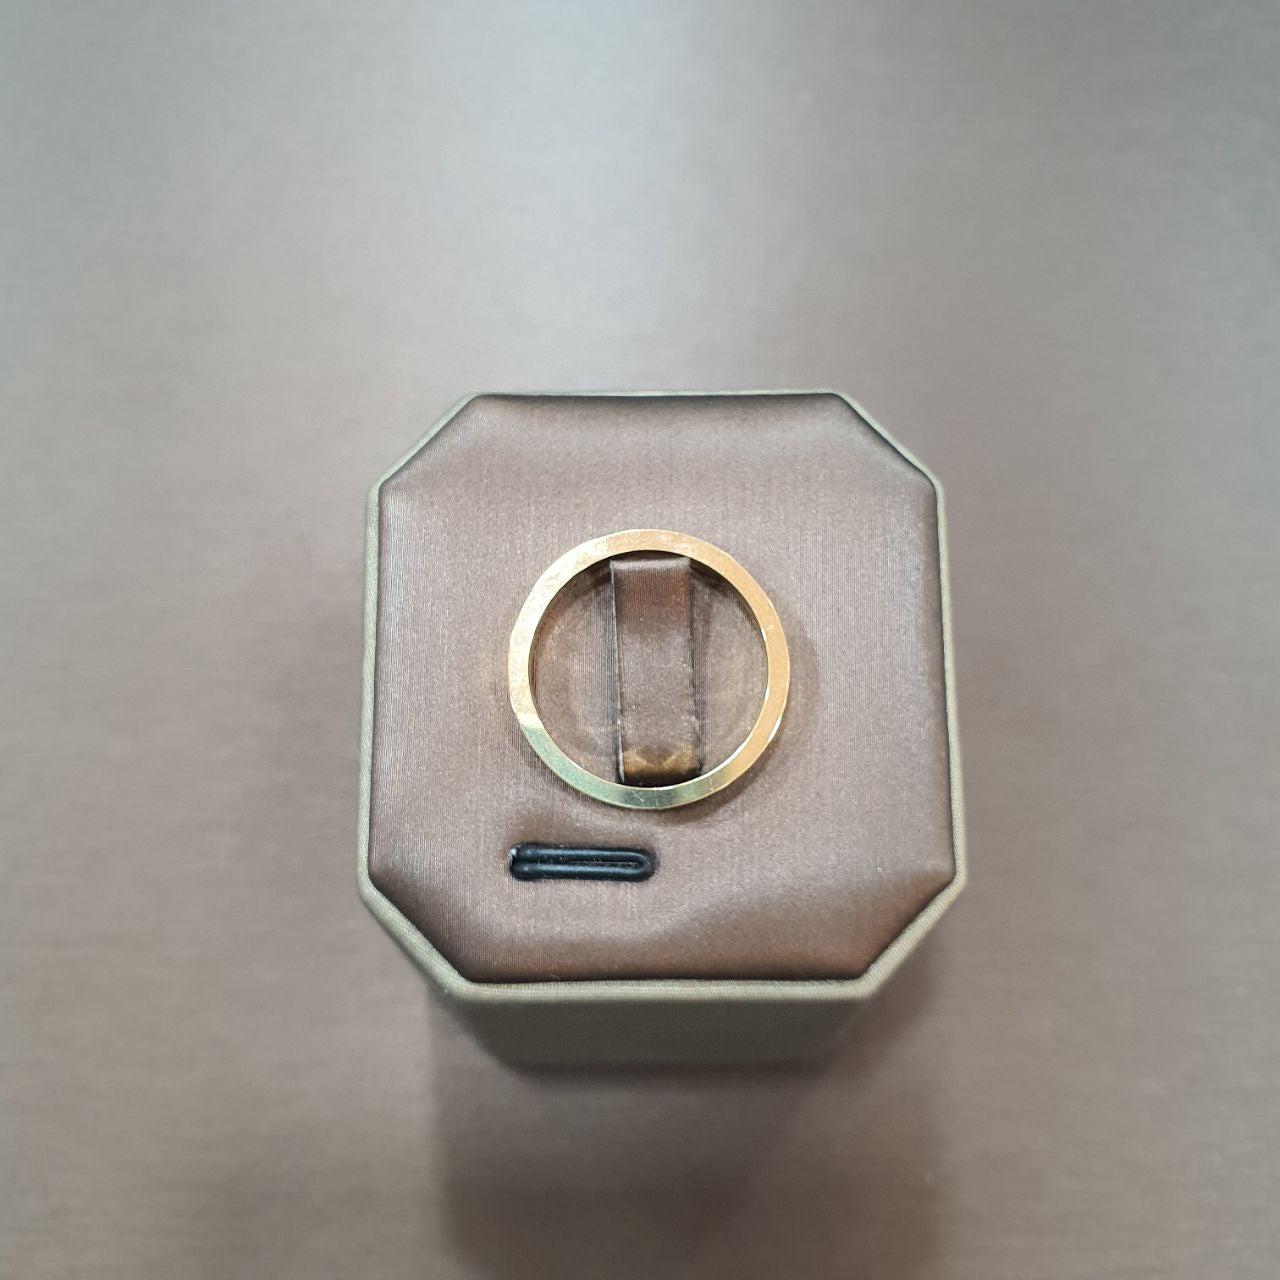 22k / 916 Gold C Design Ring 3.6mm-Rings-Best Gold Shop